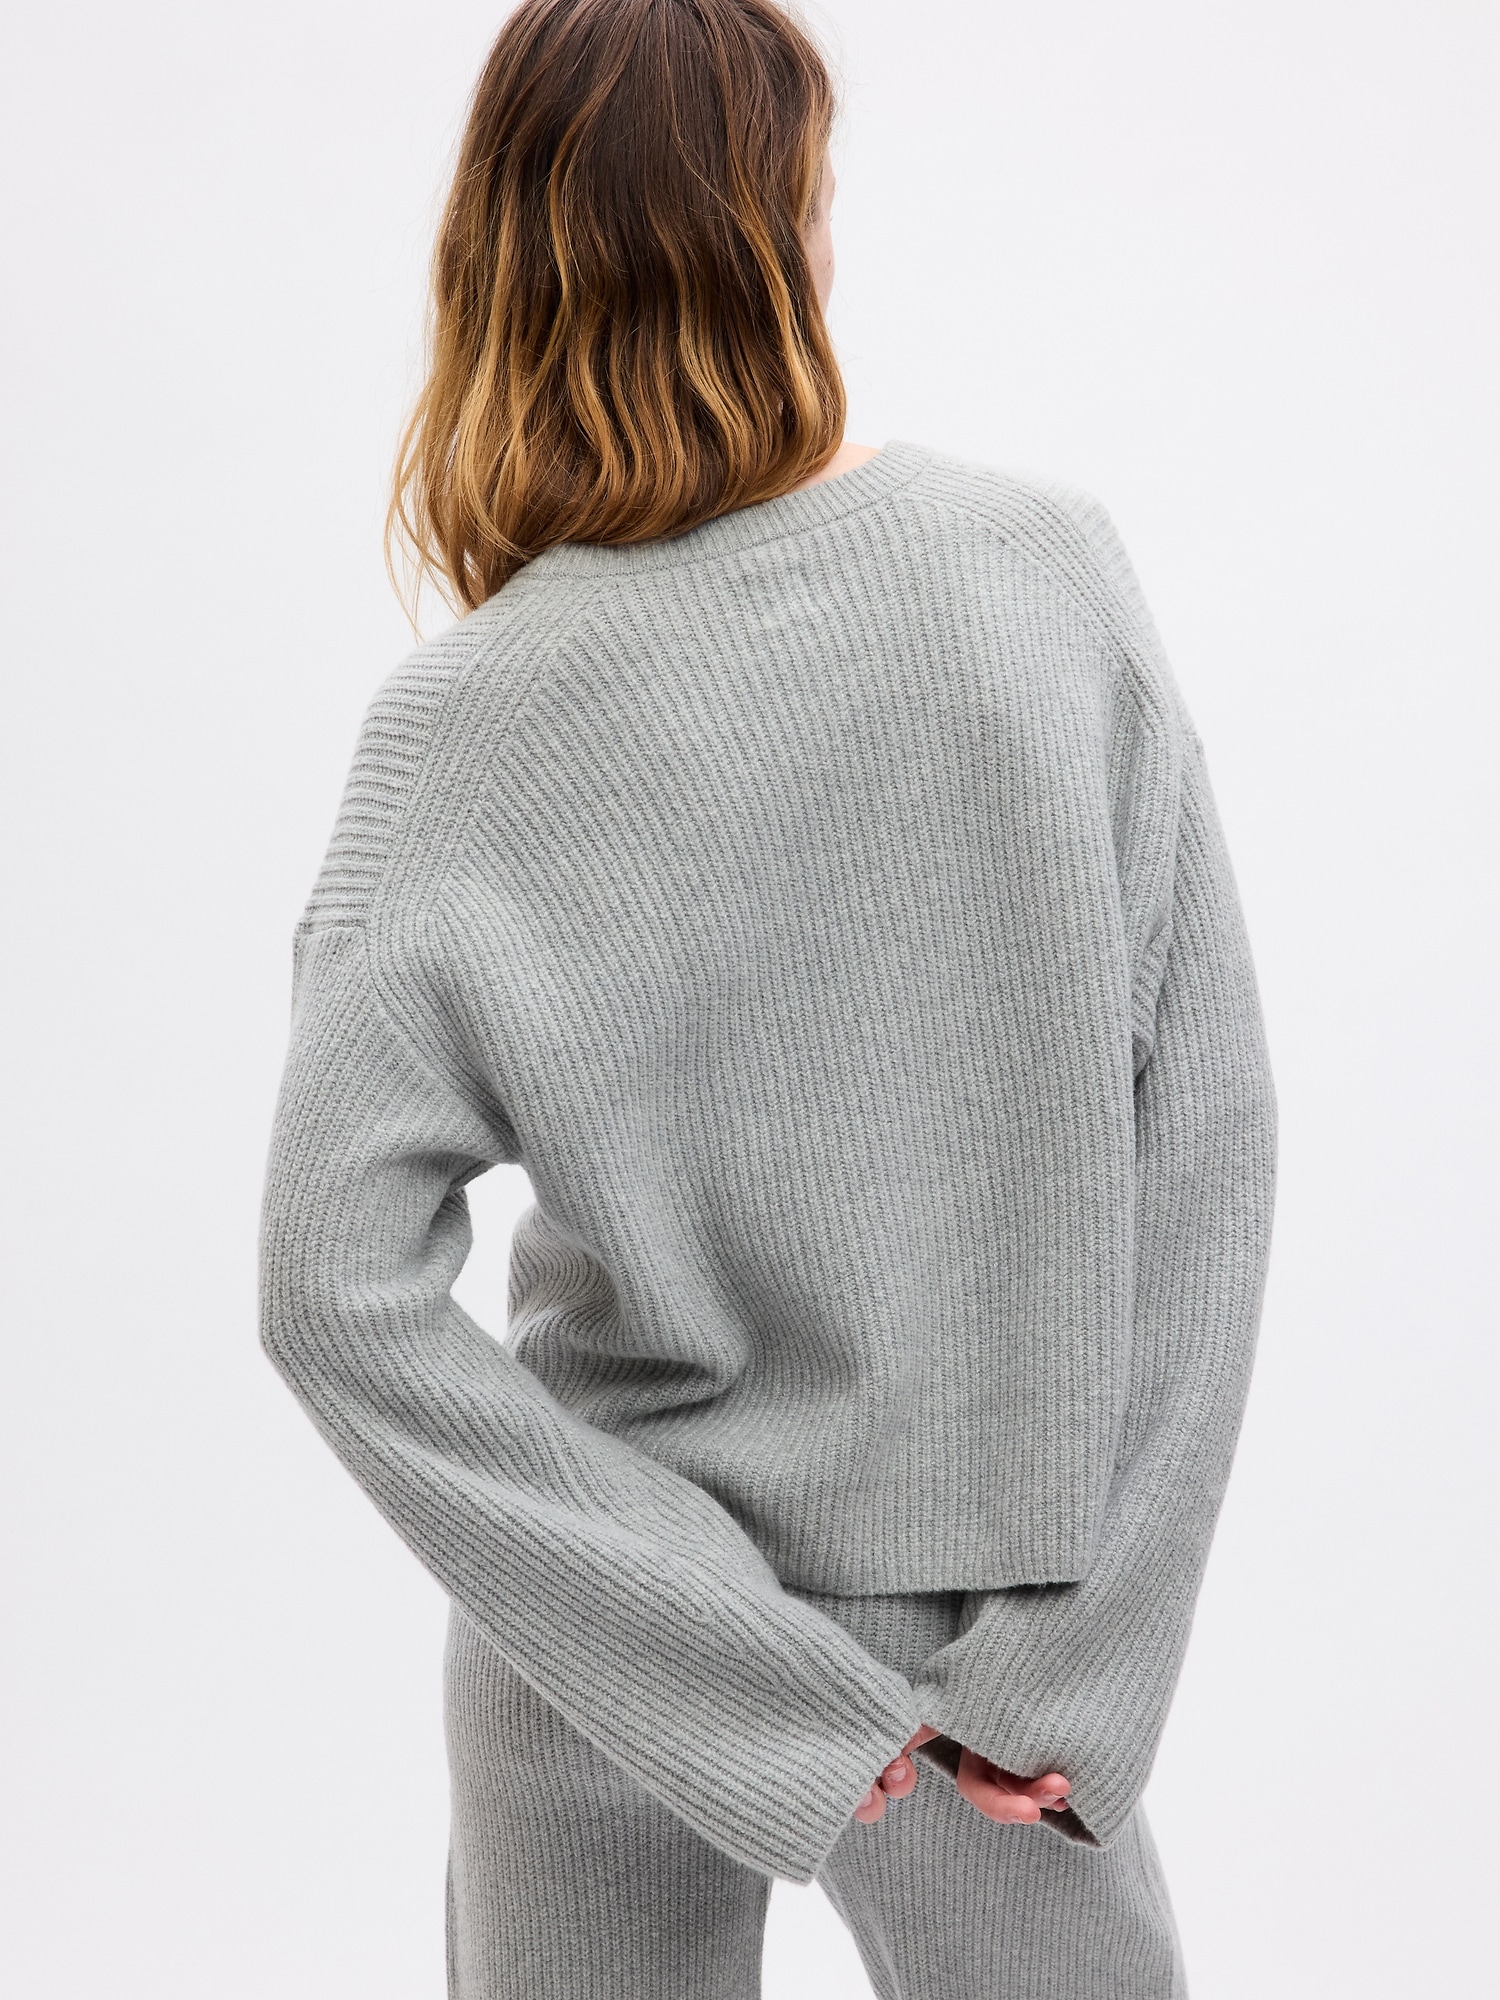 CashSoft Shaker-Stitch Relaxed Sweater | Gap